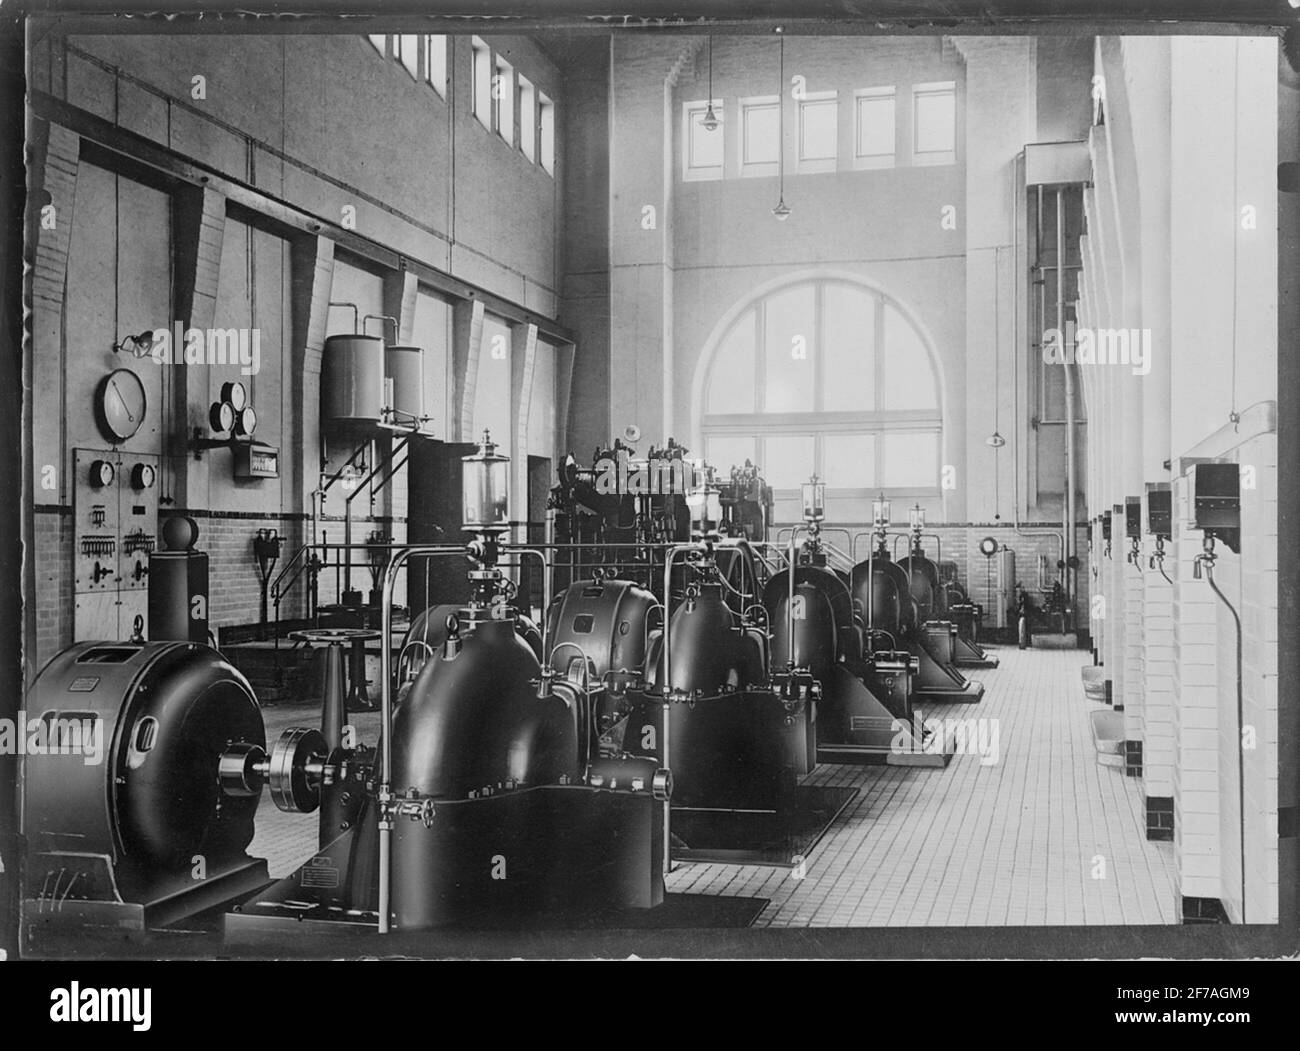 Steam generators? AB de Laval's steam turbine. Stock Photo